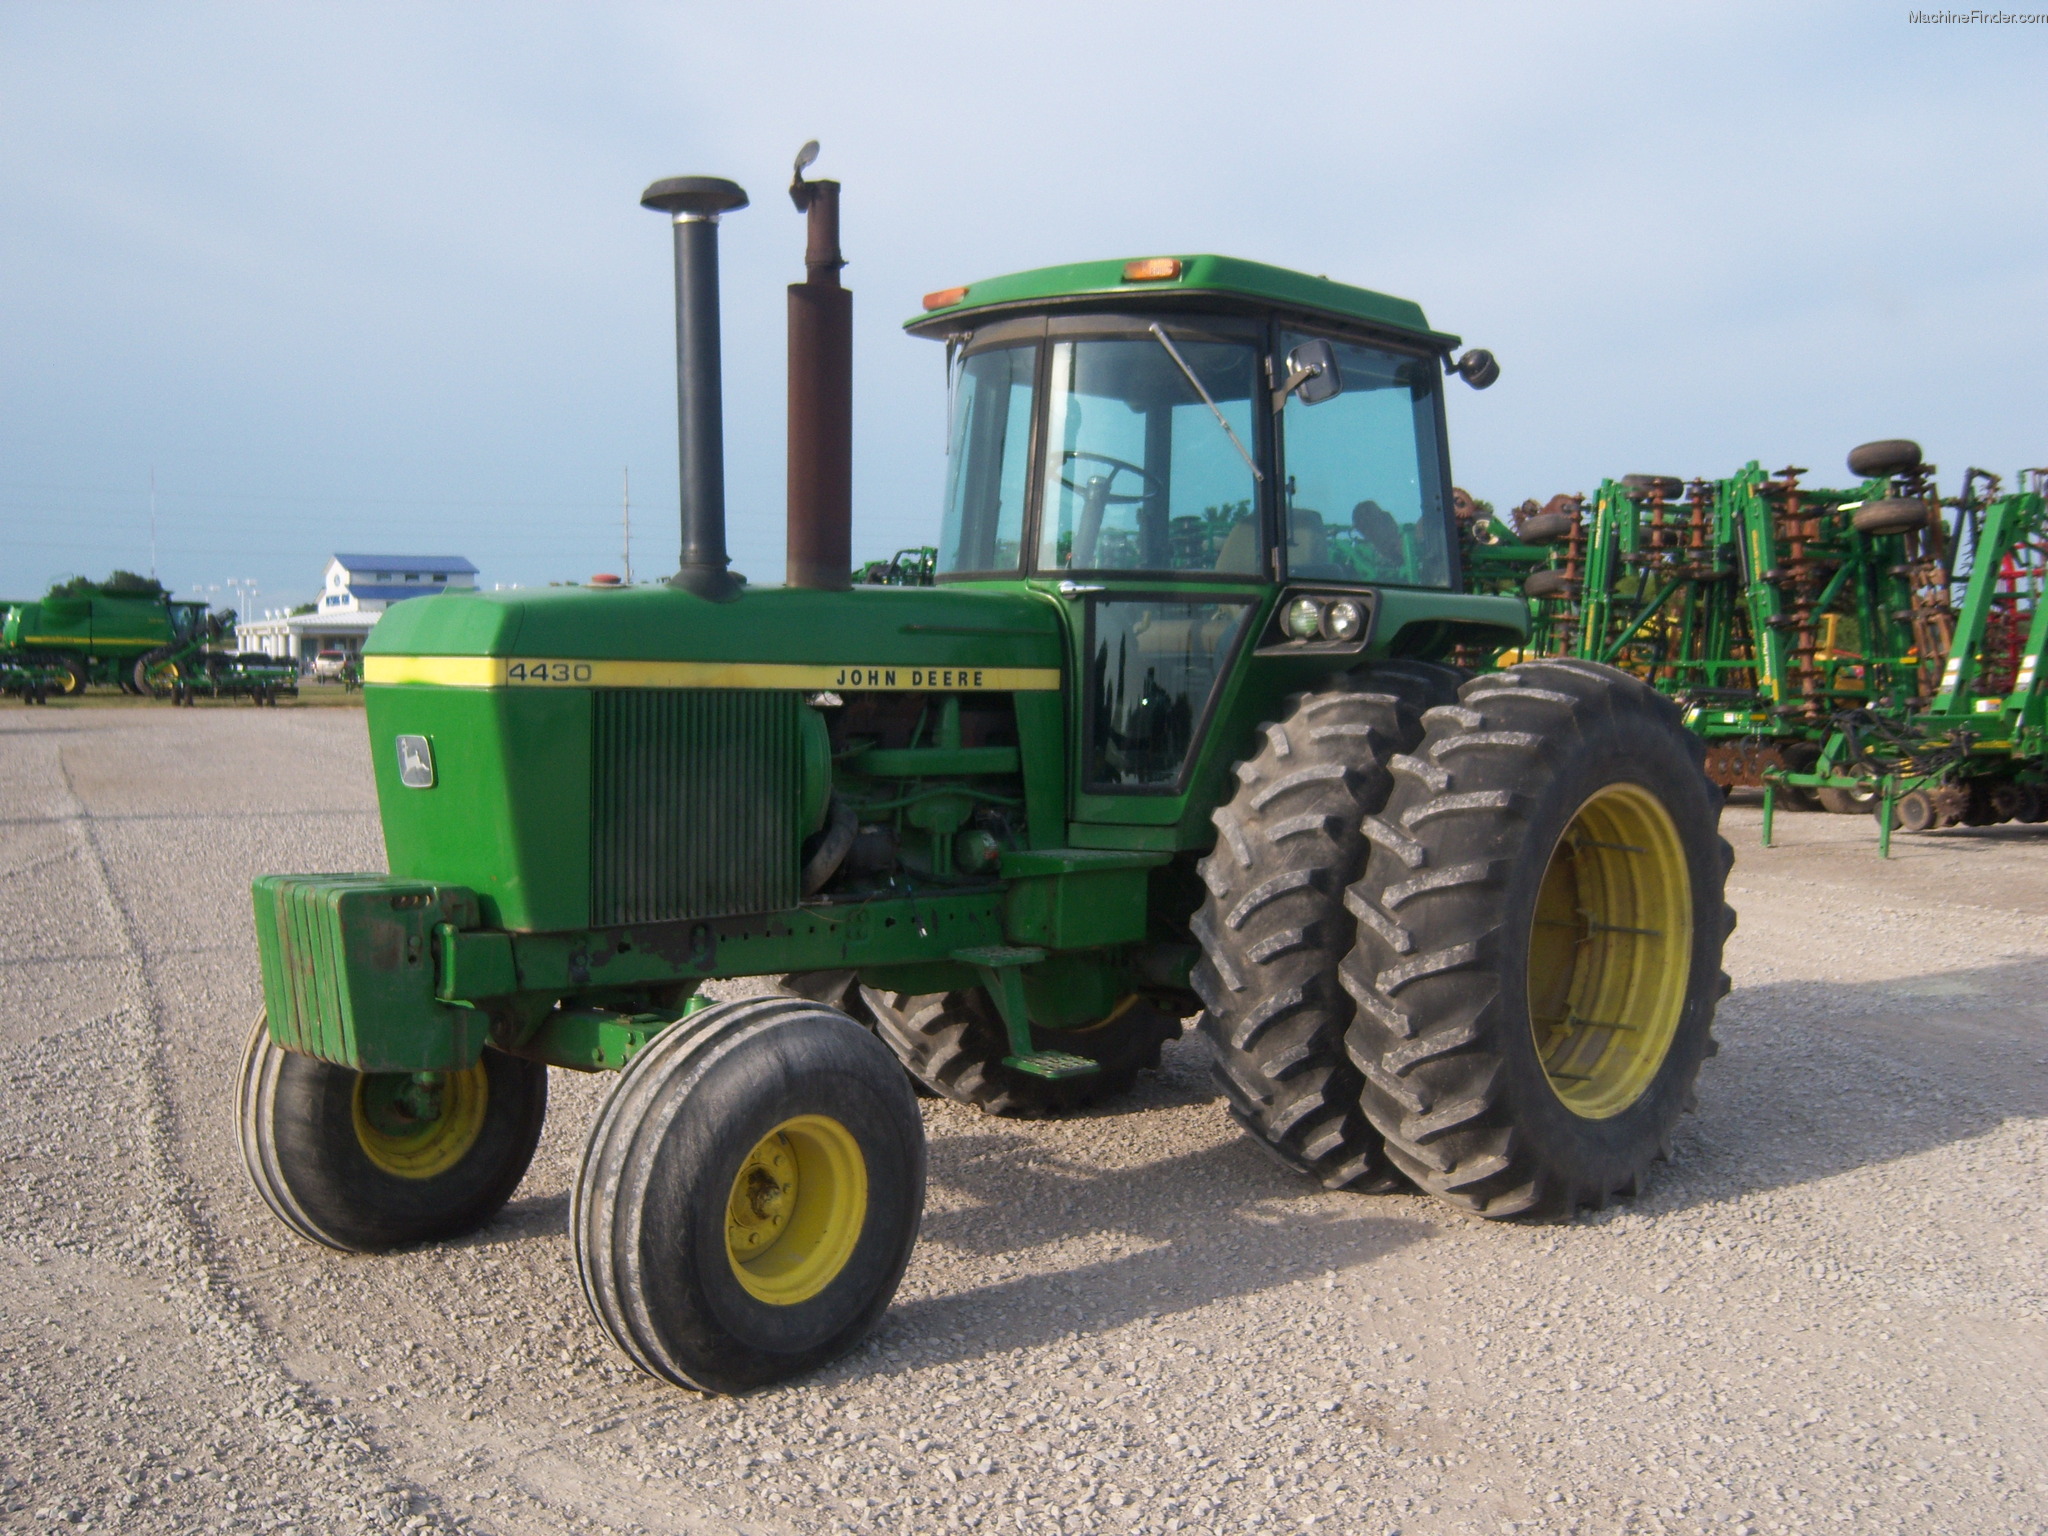 1977 John Deere 4430 Tractors - Row Crop (+100hp) - John ...